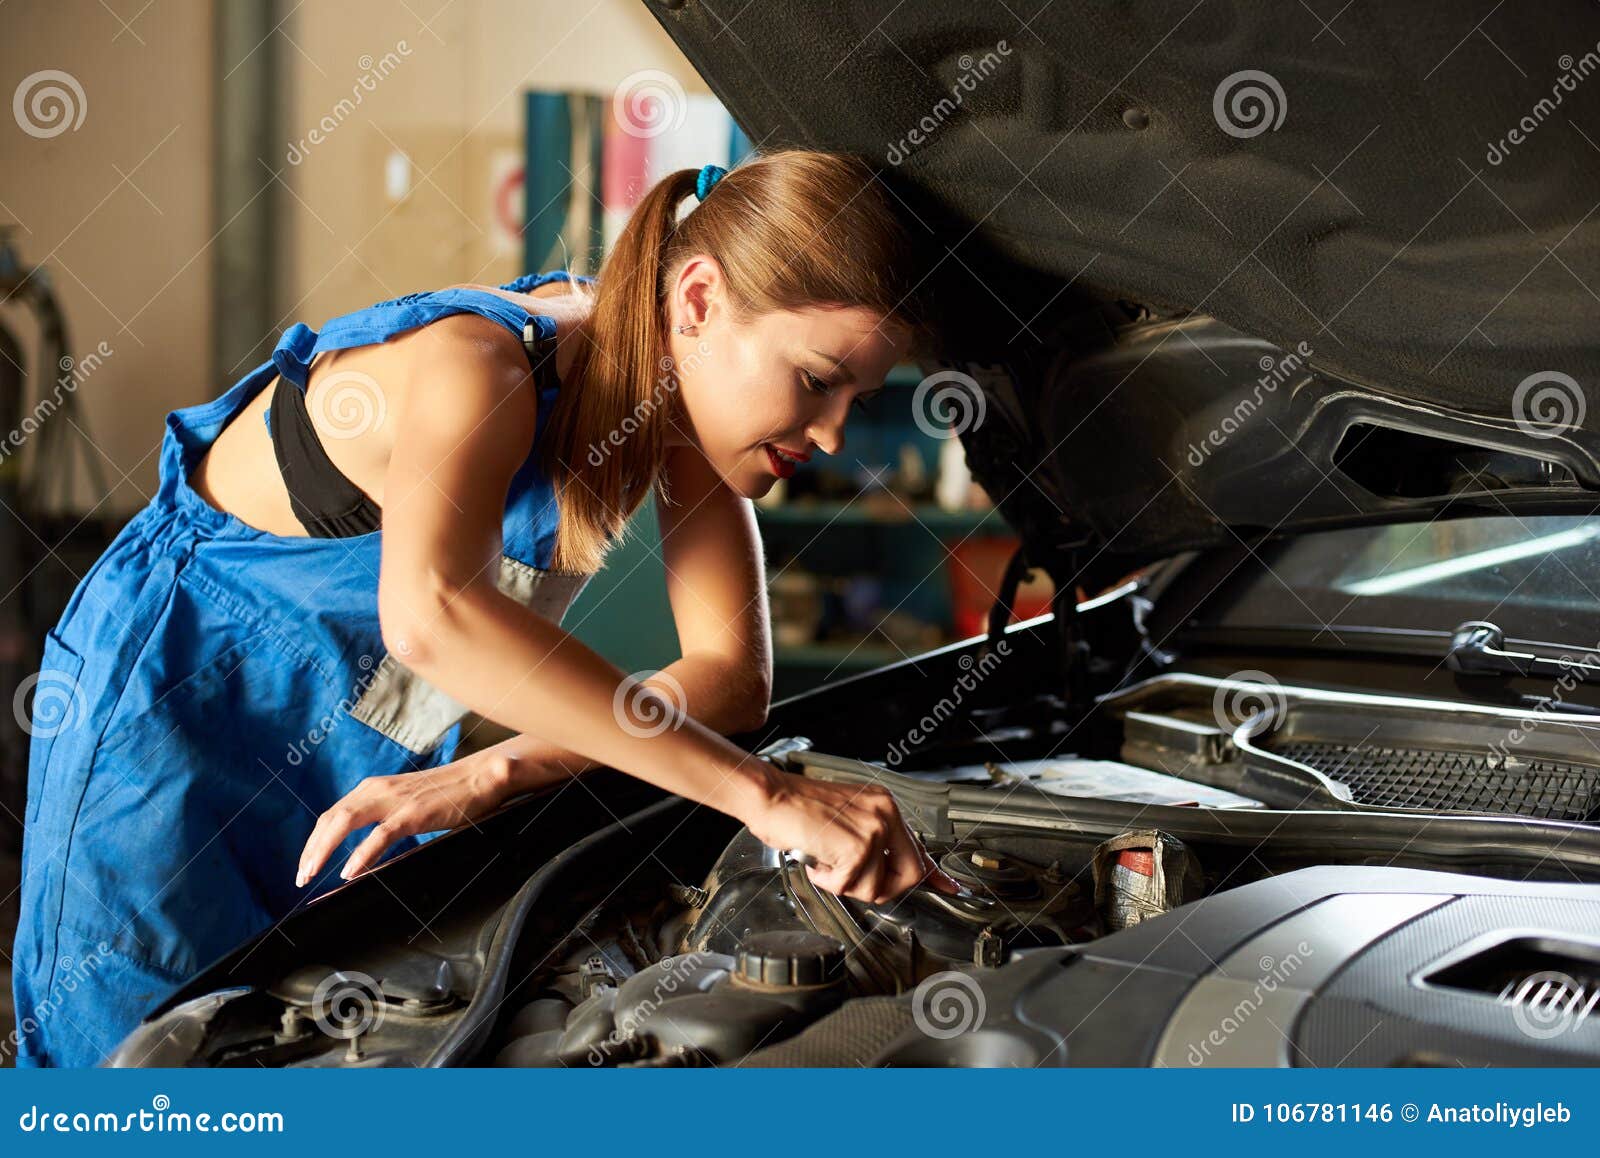 Sweetie fox чинит машину. Девушка чинит машину. Девушка ремонтирует машину. Женщина автомеханик. Девушка автослесарь.